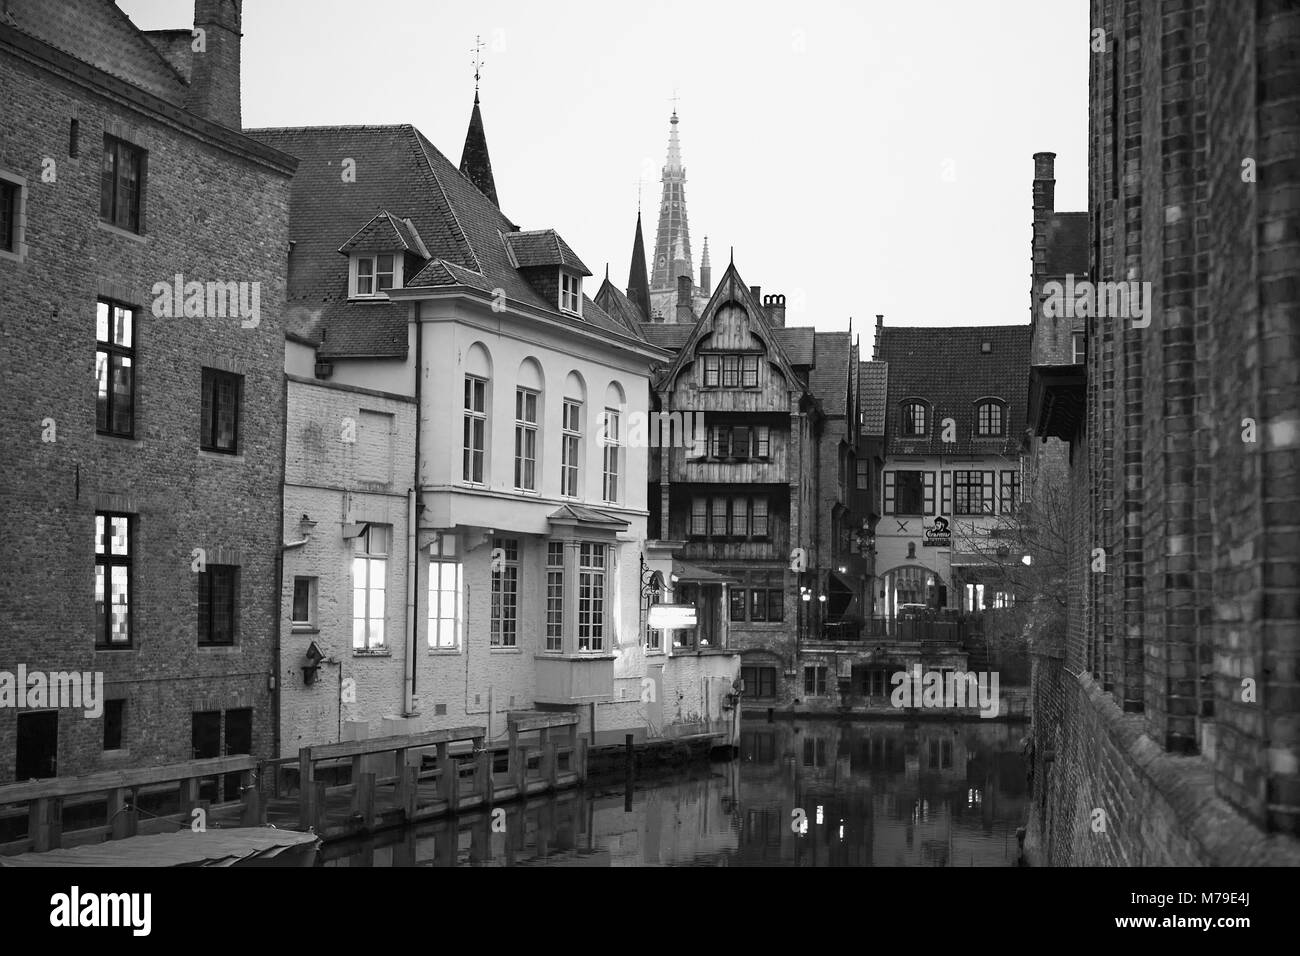 Vue le long du canal Groenerei de Blinde-Ezelbrug, Brugge, Belgique, le Duc de Bourgogne avec restaurant sur la gauche, et en face, t'Bourgoensche Cruyce et Bourgoensch Hof. Film en noir et blanc photographie Banque D'Images